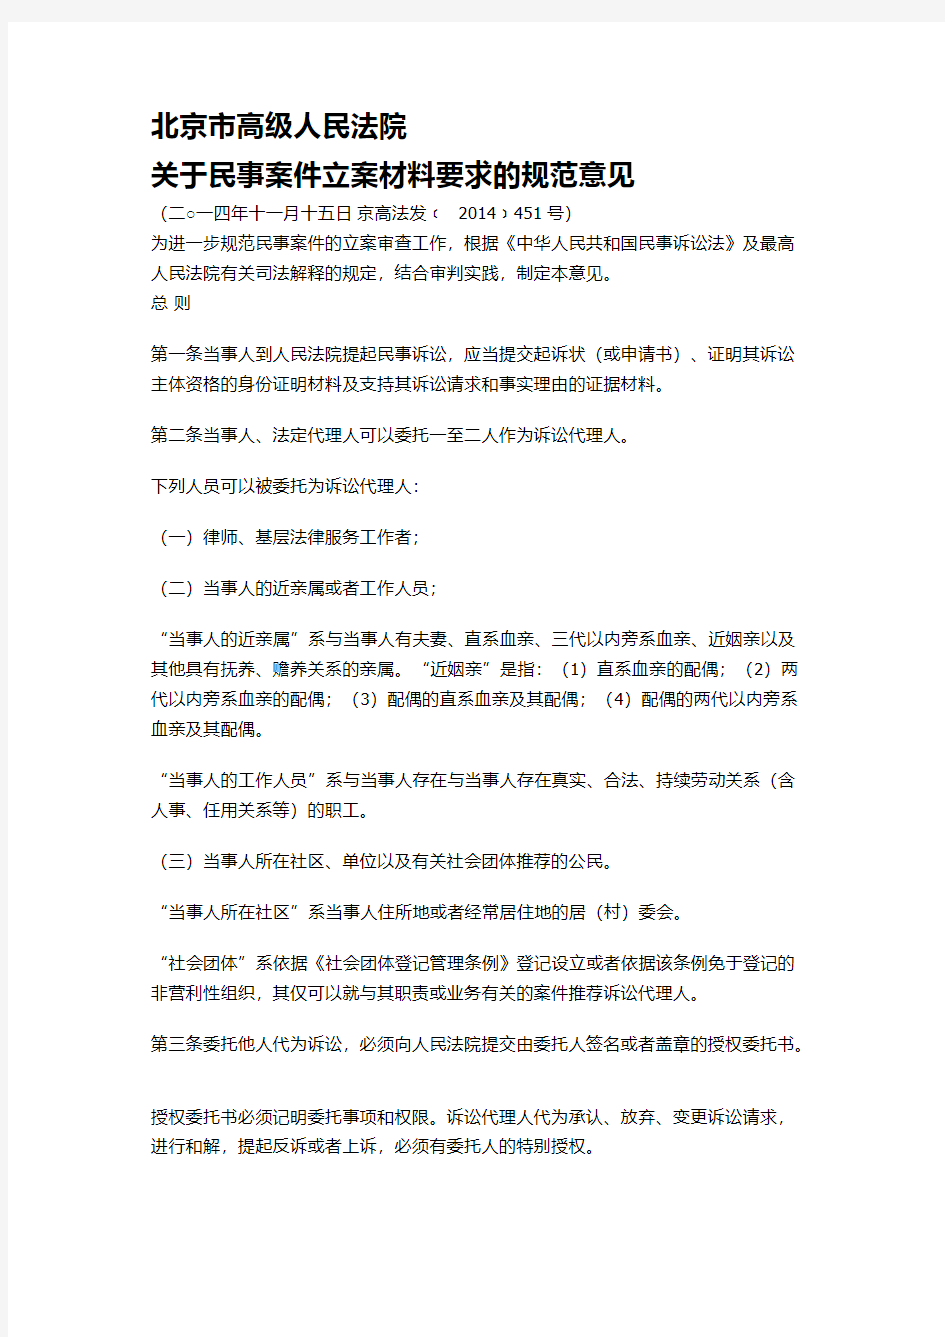 北京市高级人民法院关于民事案件立案材料要求的规范意见-推荐下载